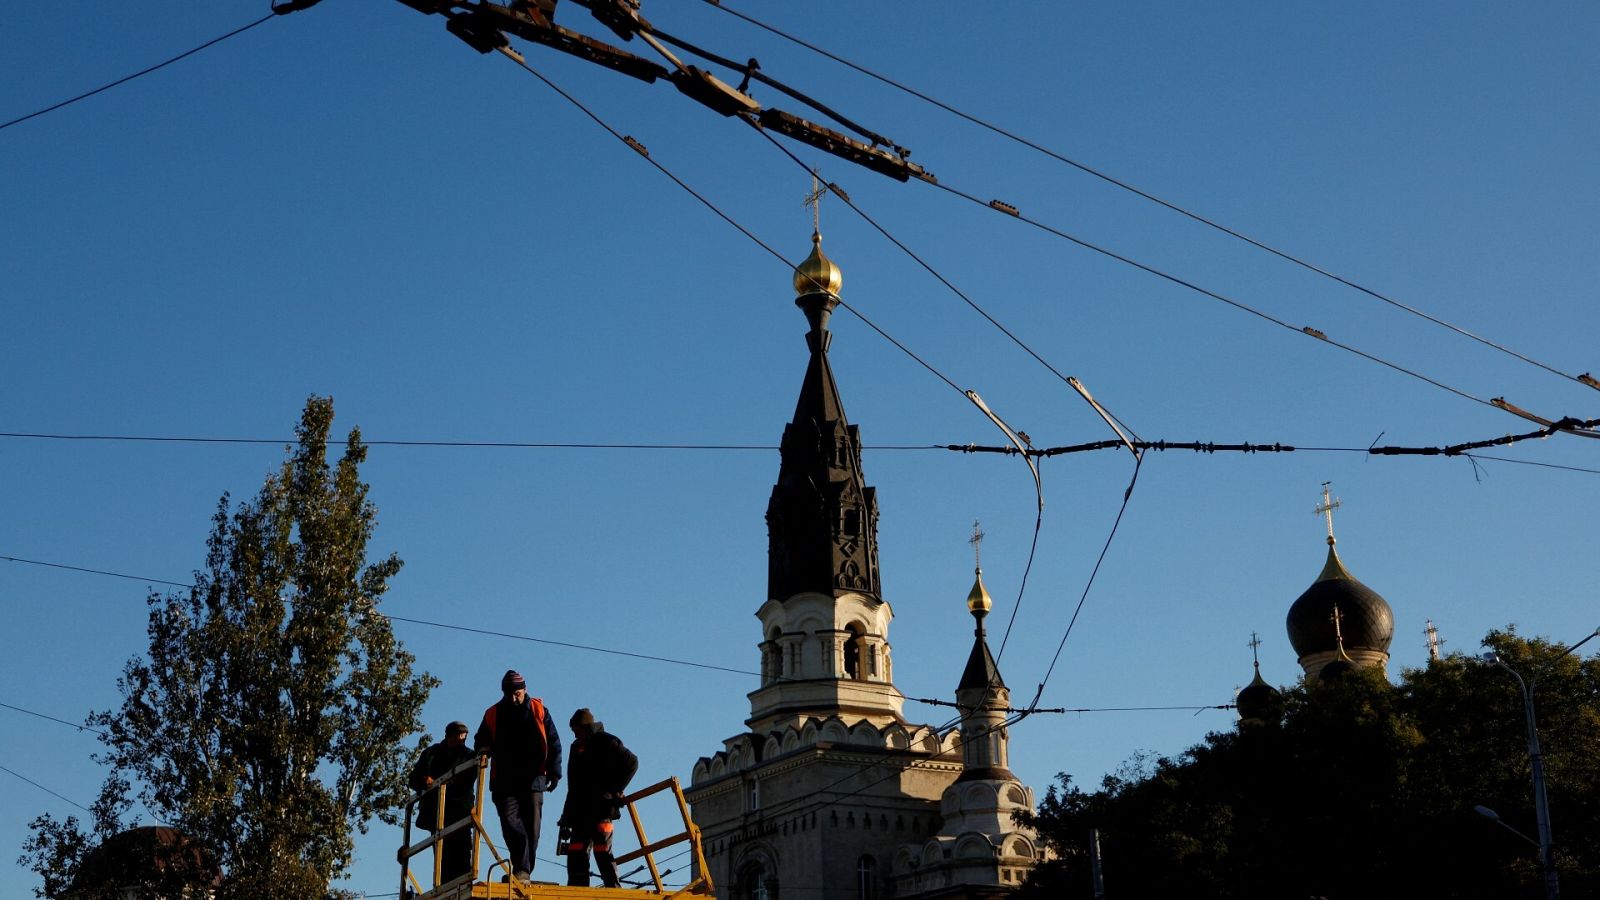 Trabajadores municipales revisan la red eléctrica del transporte antes de los posibles cortes de energía en Mykolaiv, Ucrania. REUTERS/Valentyn Ogirenko